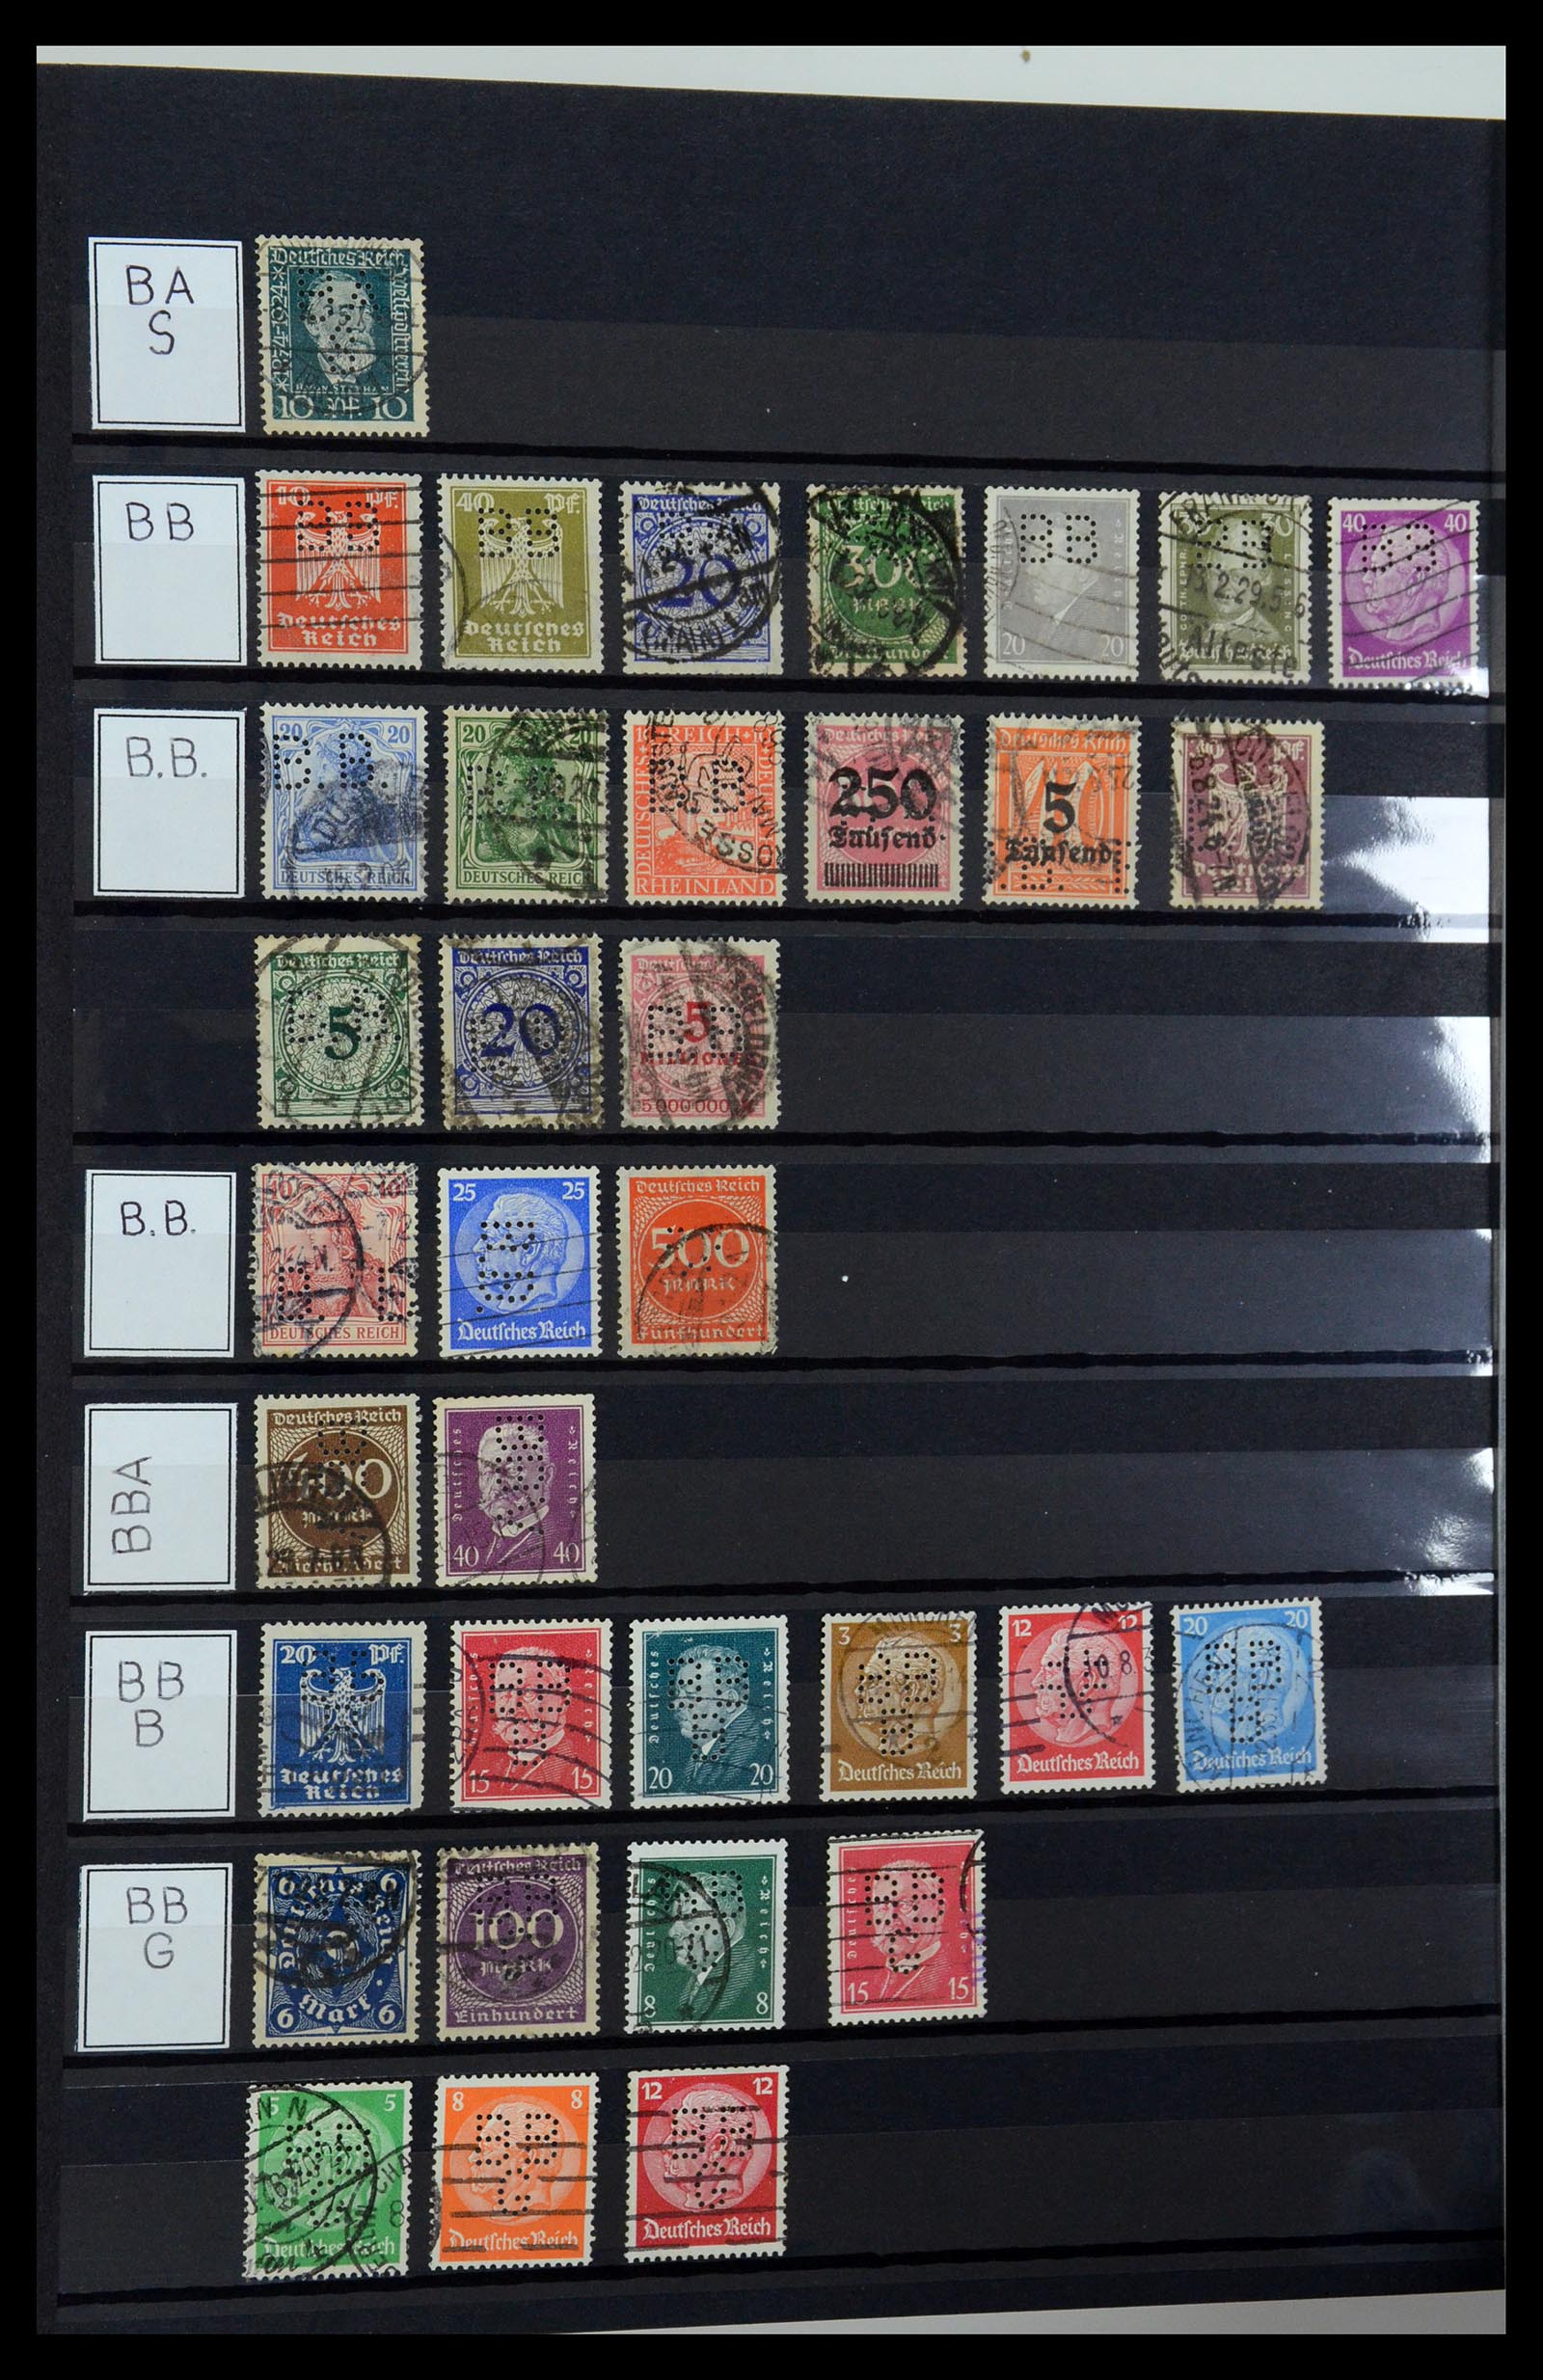 36405 034 - Stamp collection 36405 German Reich perfins 1880-1945.